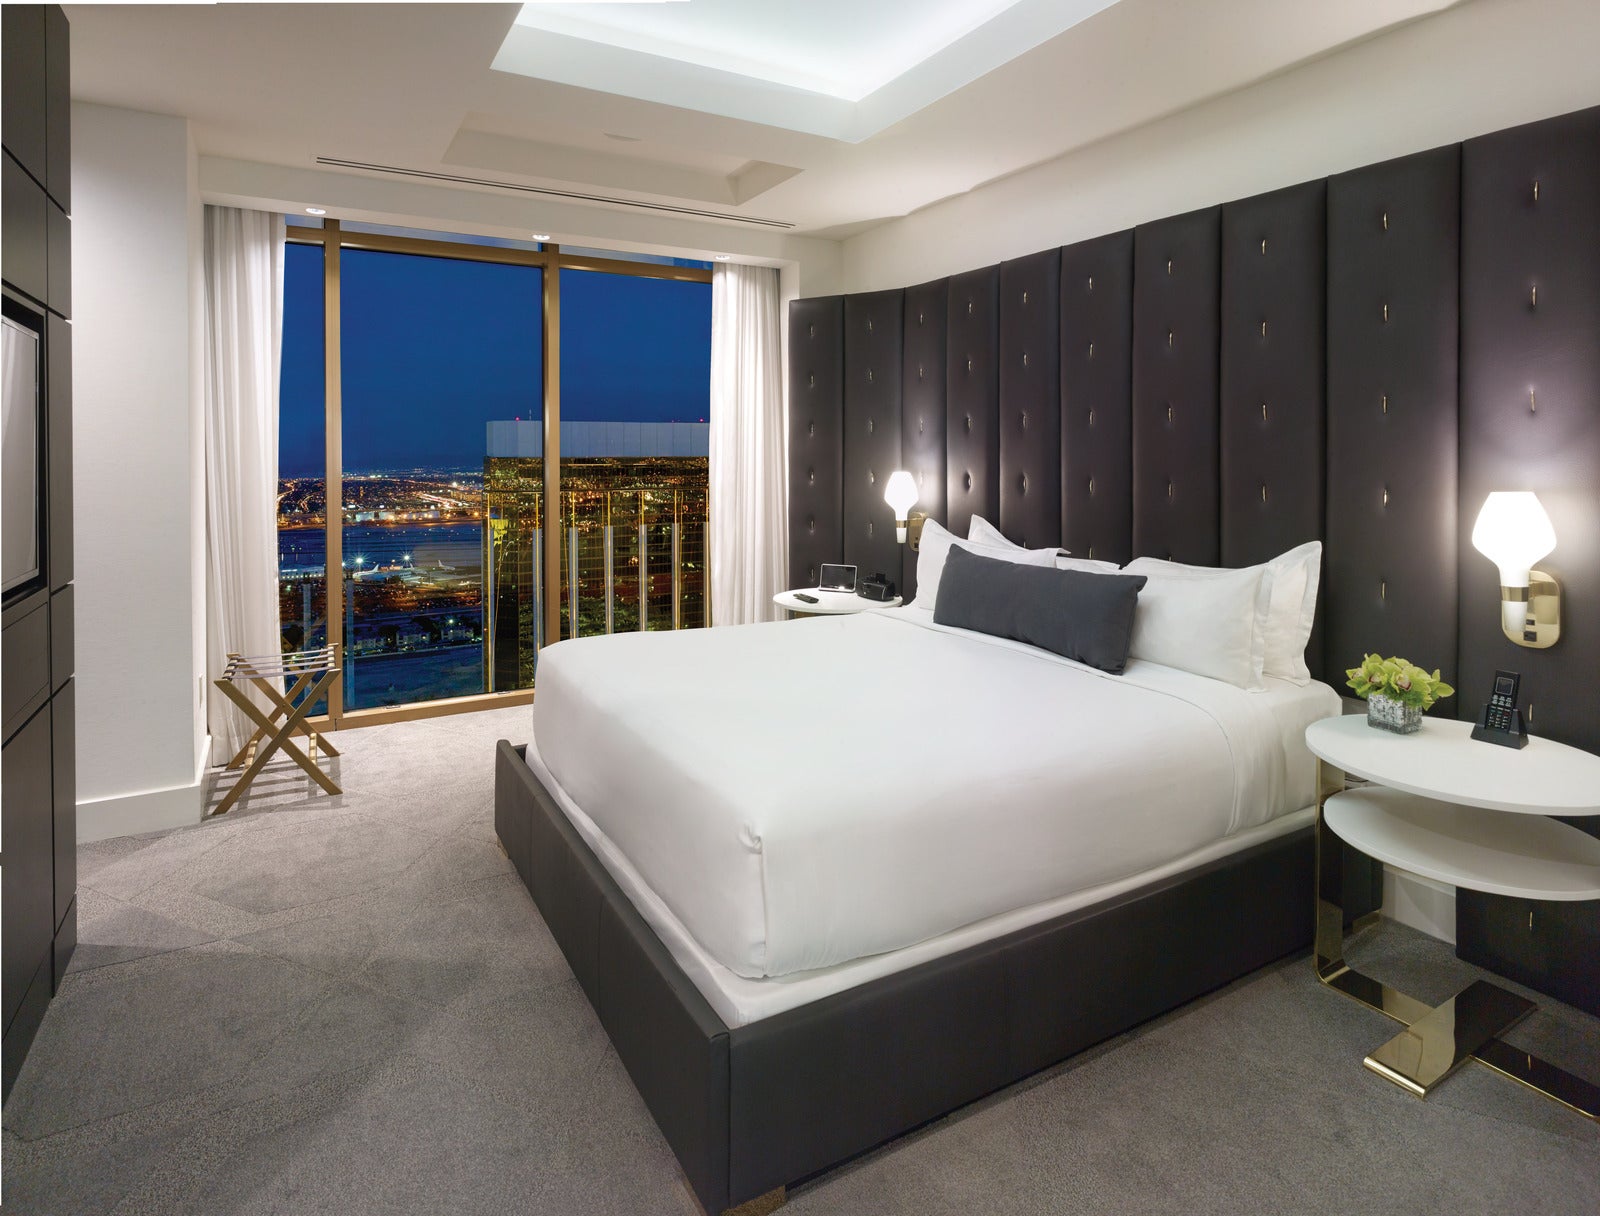 Mandalay Bay Rewards Guide: Free Rooms & Perks in Las Vegas